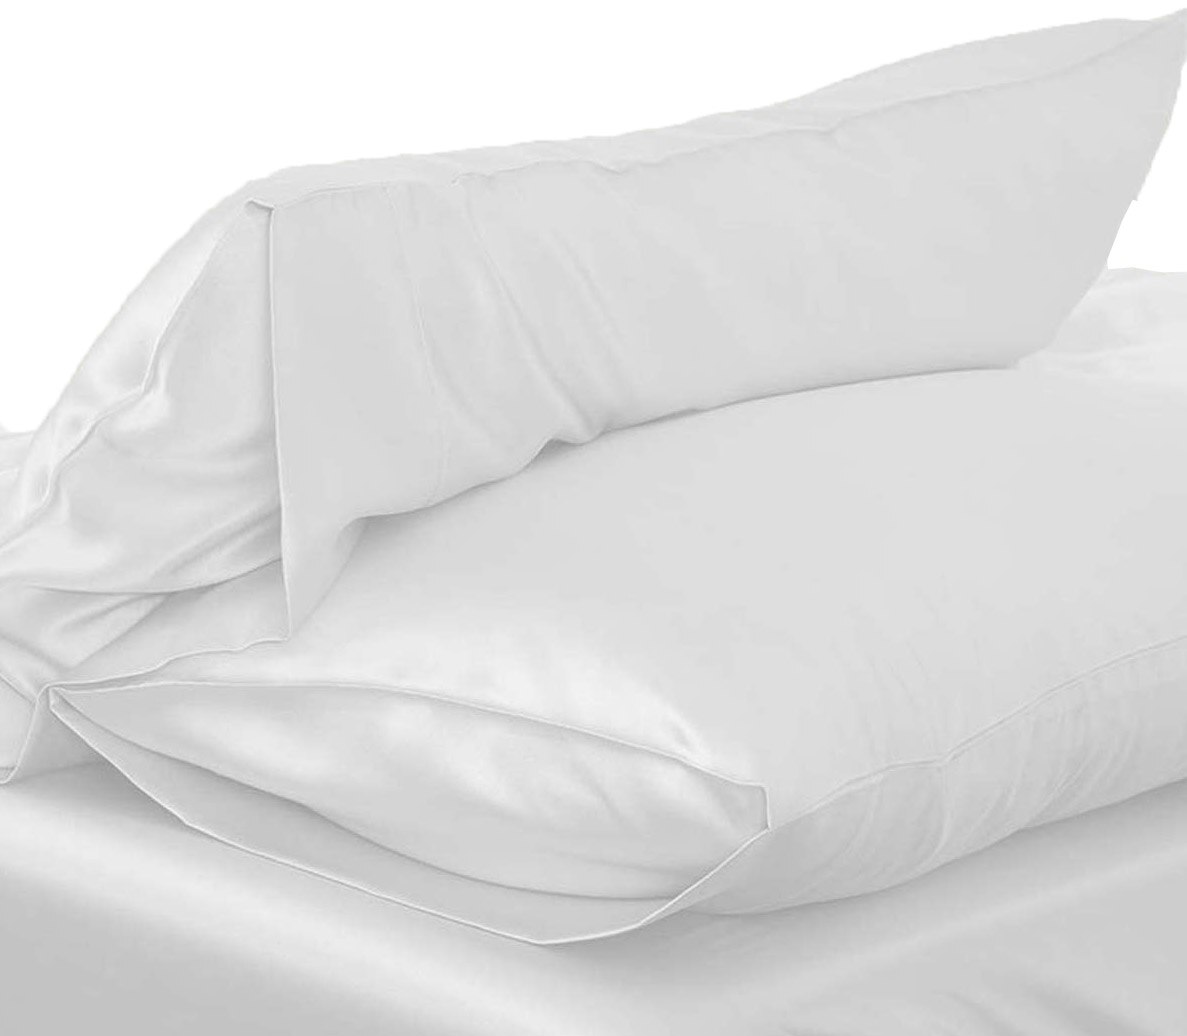 1pc 51*76cm baby sengetøj luksus silkeagtigt satin pudebetræk pudebetræk ensfarvet standard pudebetræk pudebetræk: Hvid